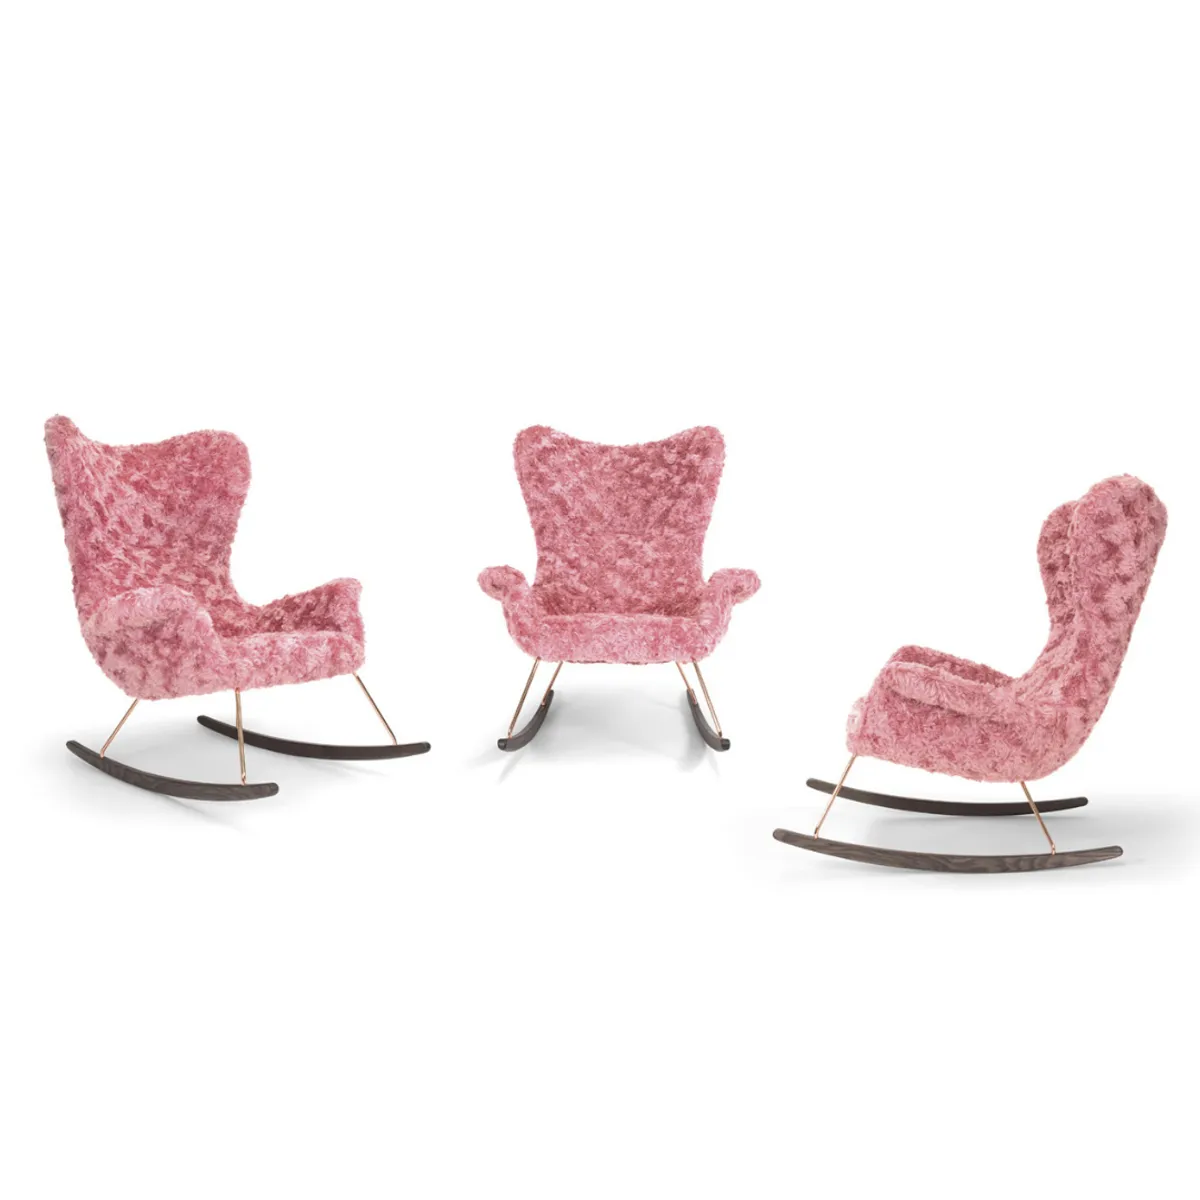 4 Sereen Fluffy Lounge Chair